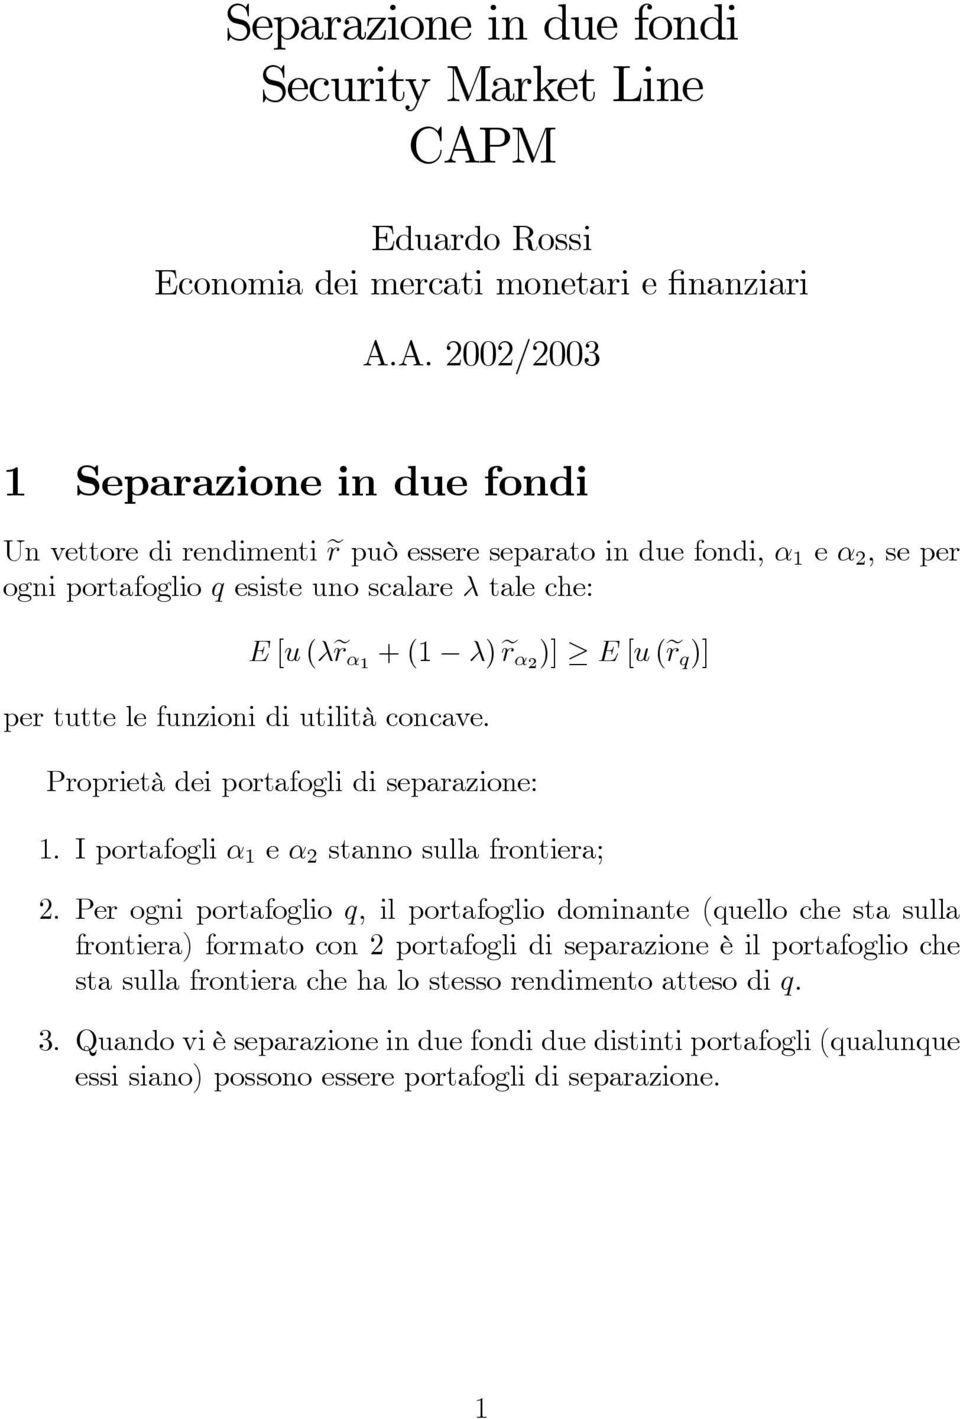 A. 2002/2003 1 Separazione in due fondi Un vettore di rendimenti er può essere separato in due fondi, α 1 e α 2,seper ogni portafoglio q esiste uno scalare λ tale che: E [u (λer α1 +(1 λ) er α2 )]